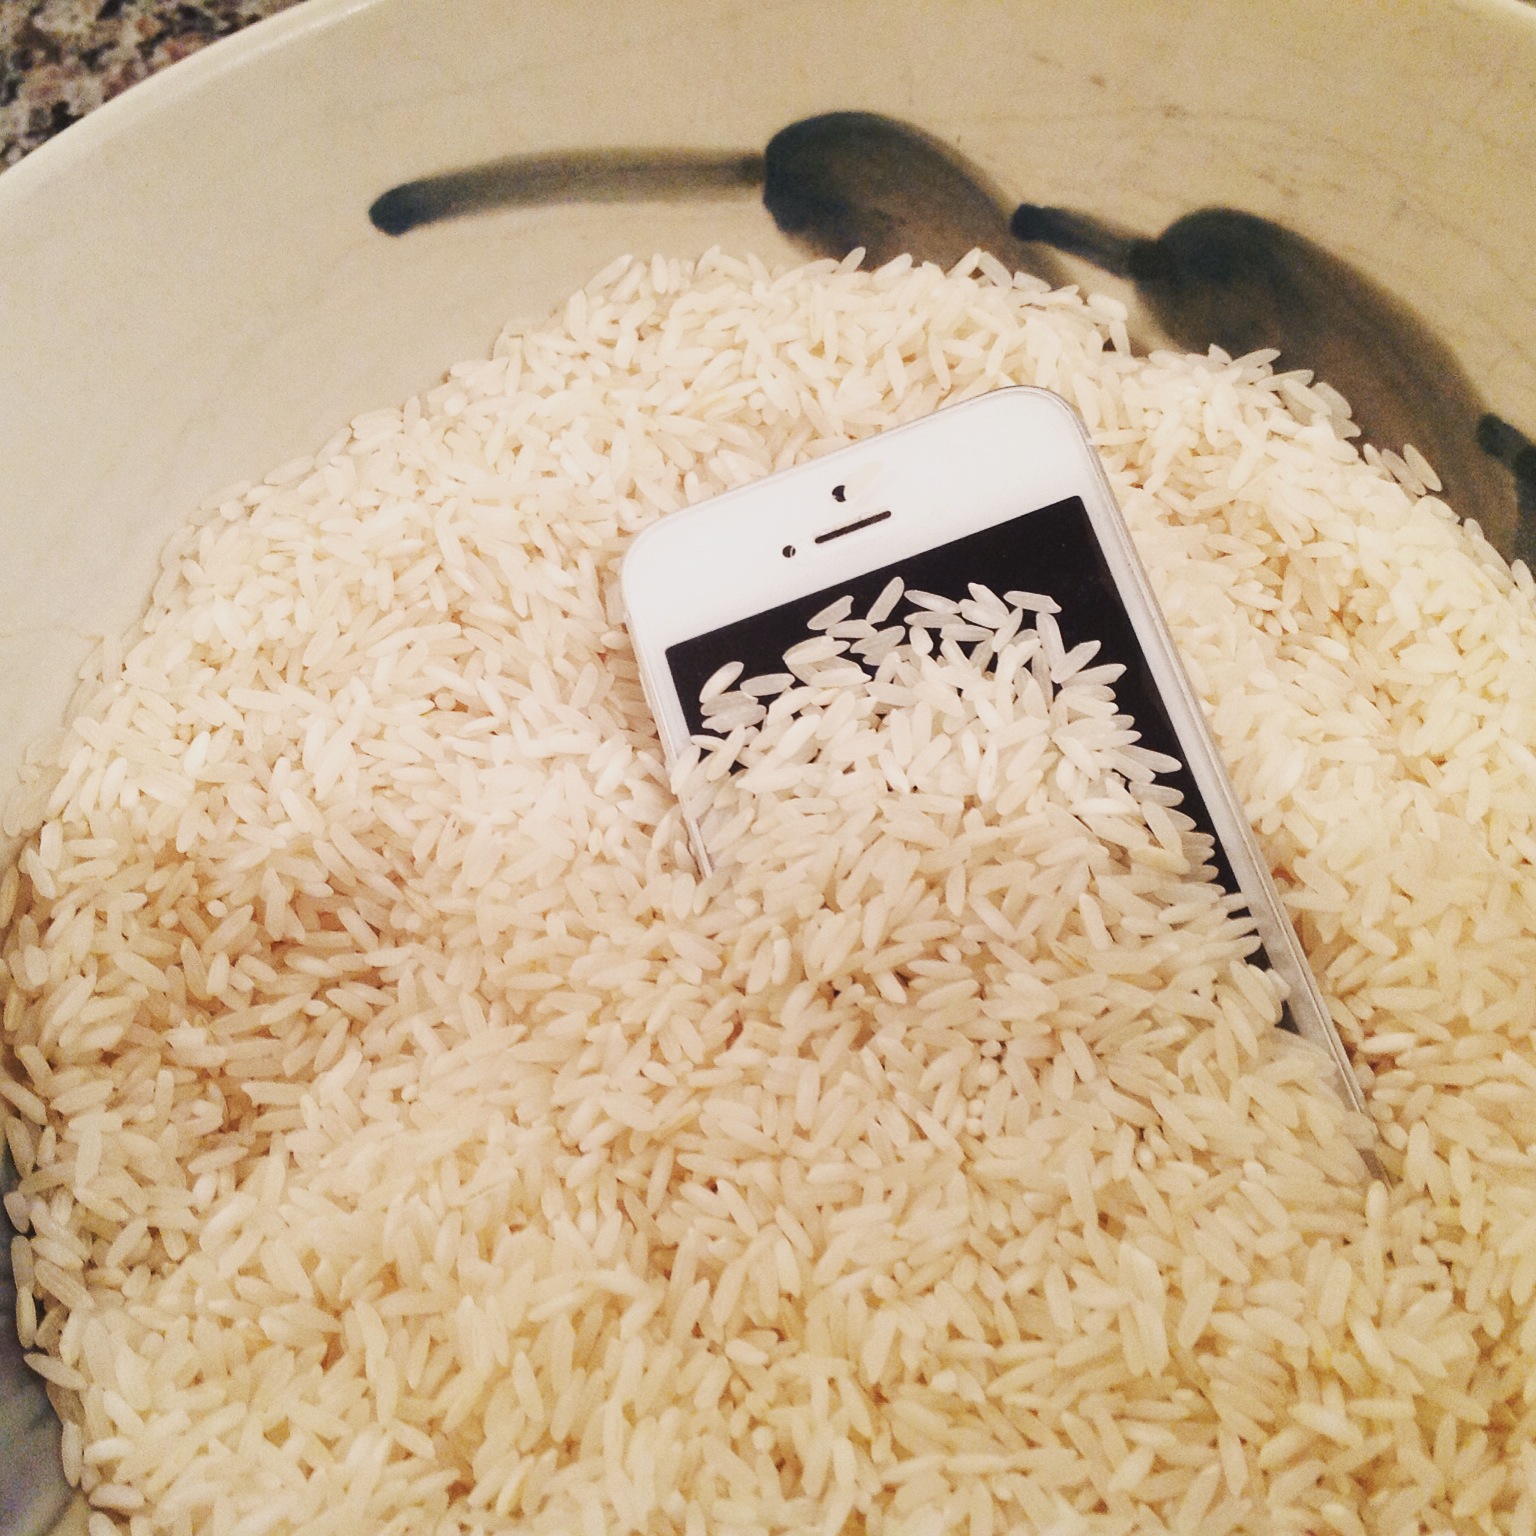 ترفندهای استفاده از برنج+ خشک کردن موبایل با برنج